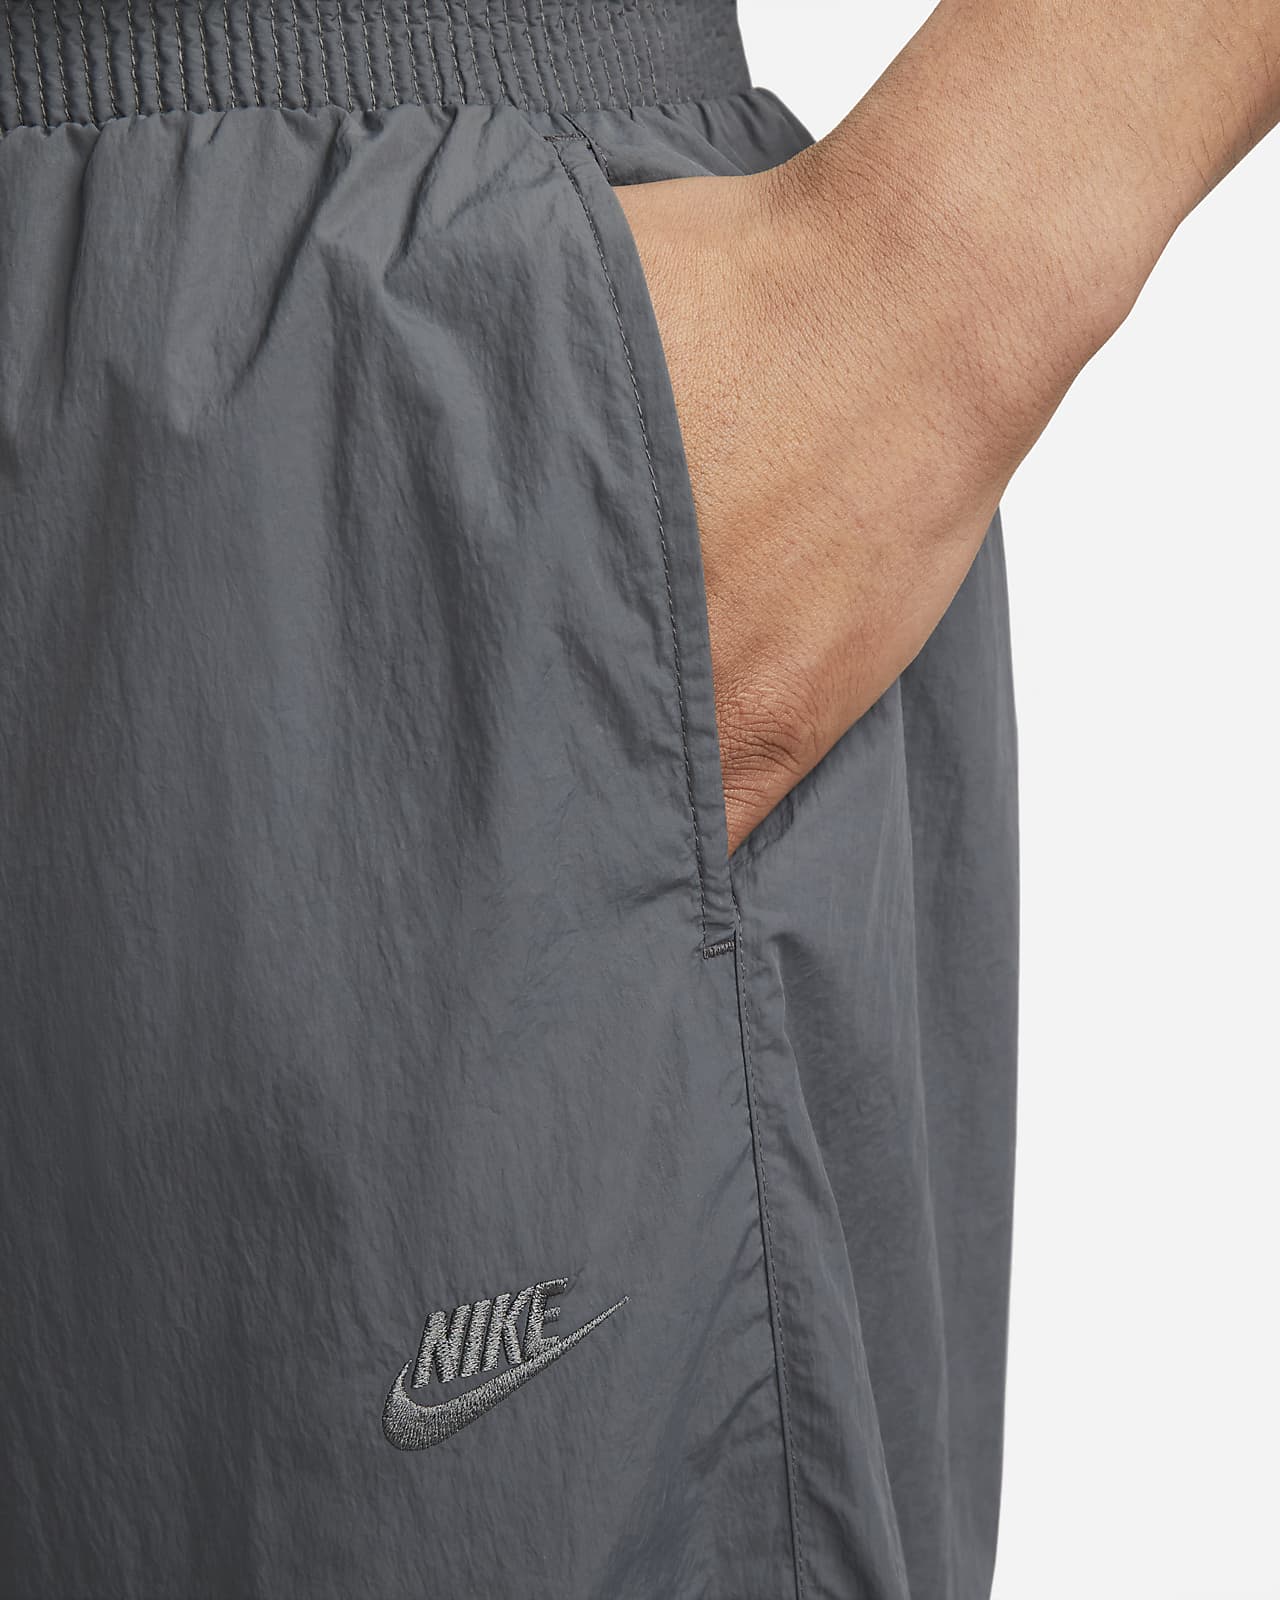 Nike Sportswear Repel Tech Pack Men's Woven Pants